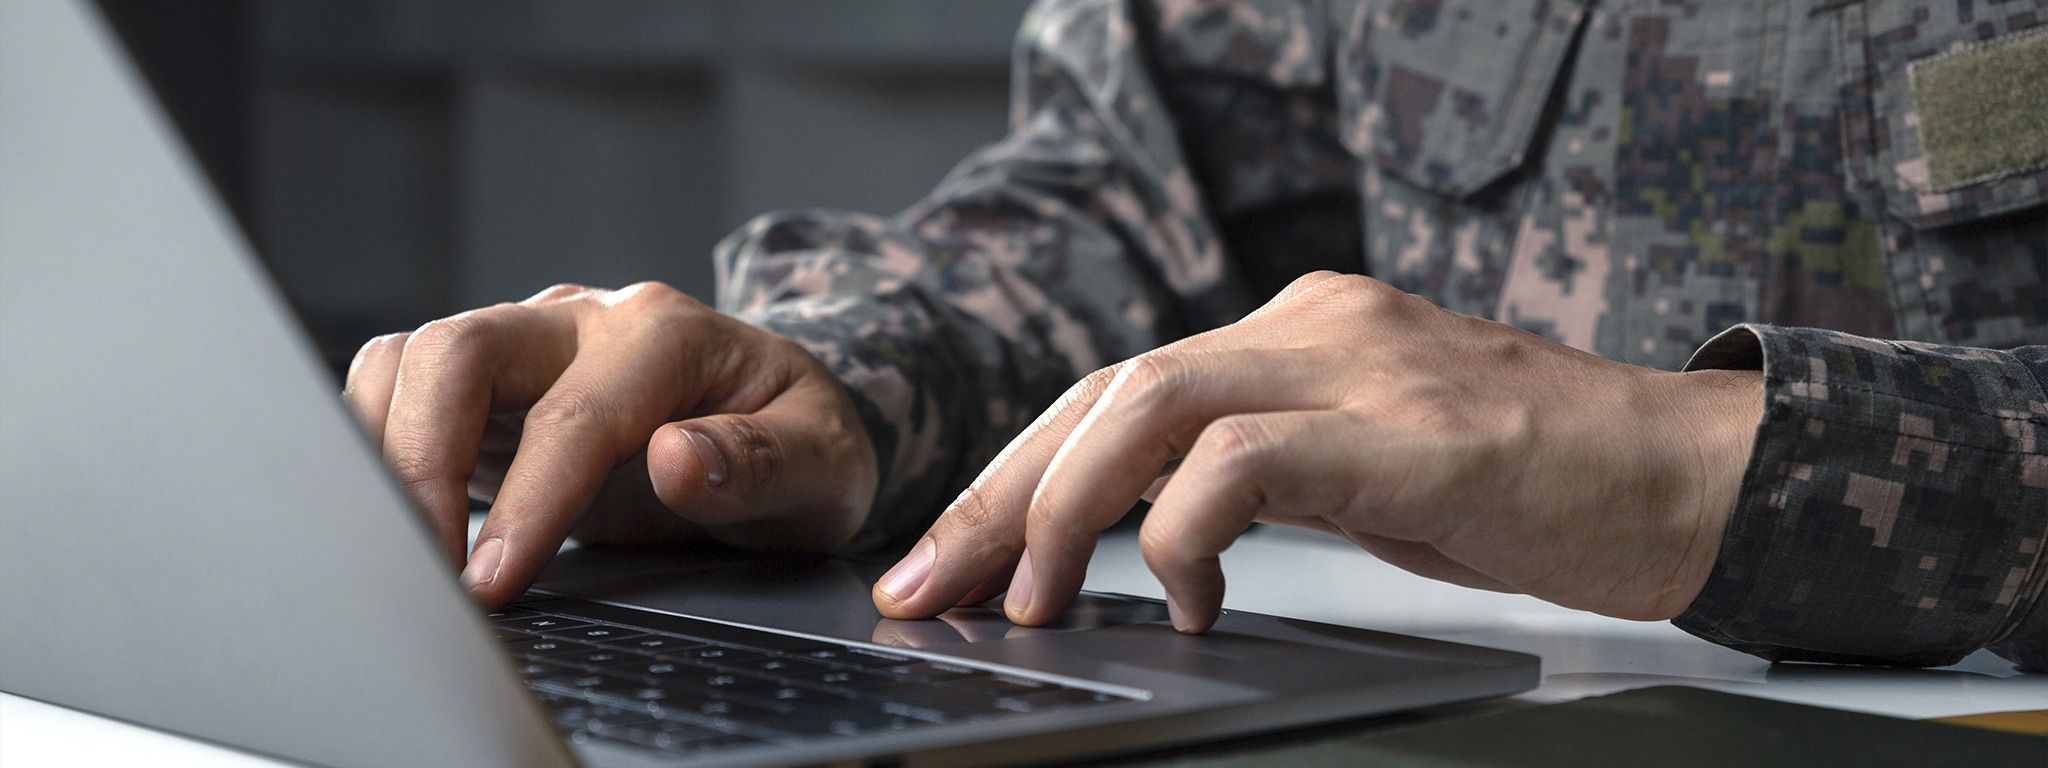 Um soldado de uniforme camuflado trabalhando em um laptop